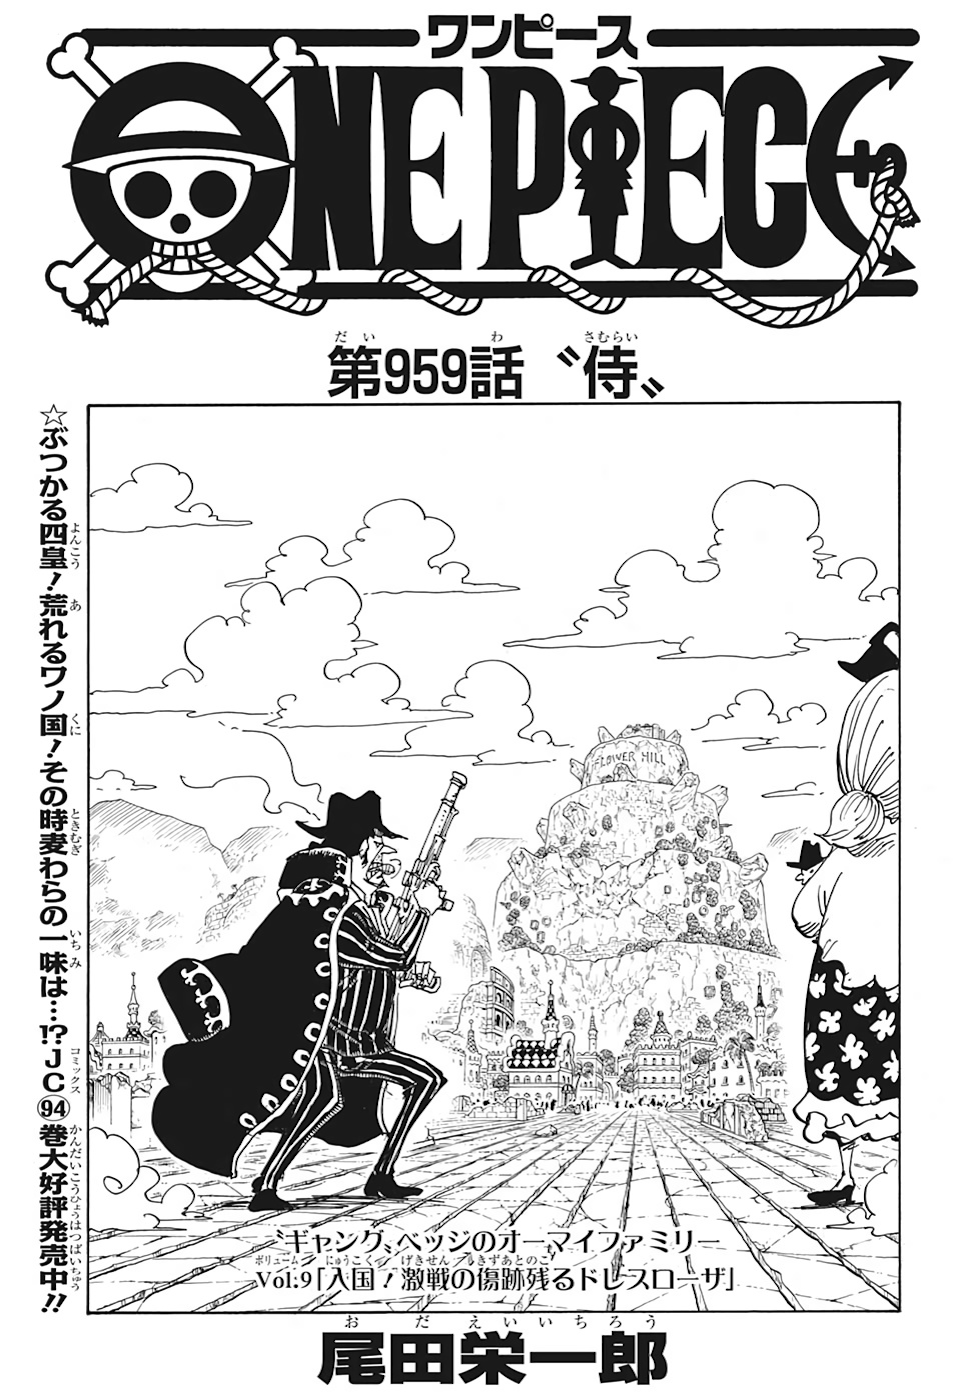 One Piece 959 ハイキュー ネタバレ